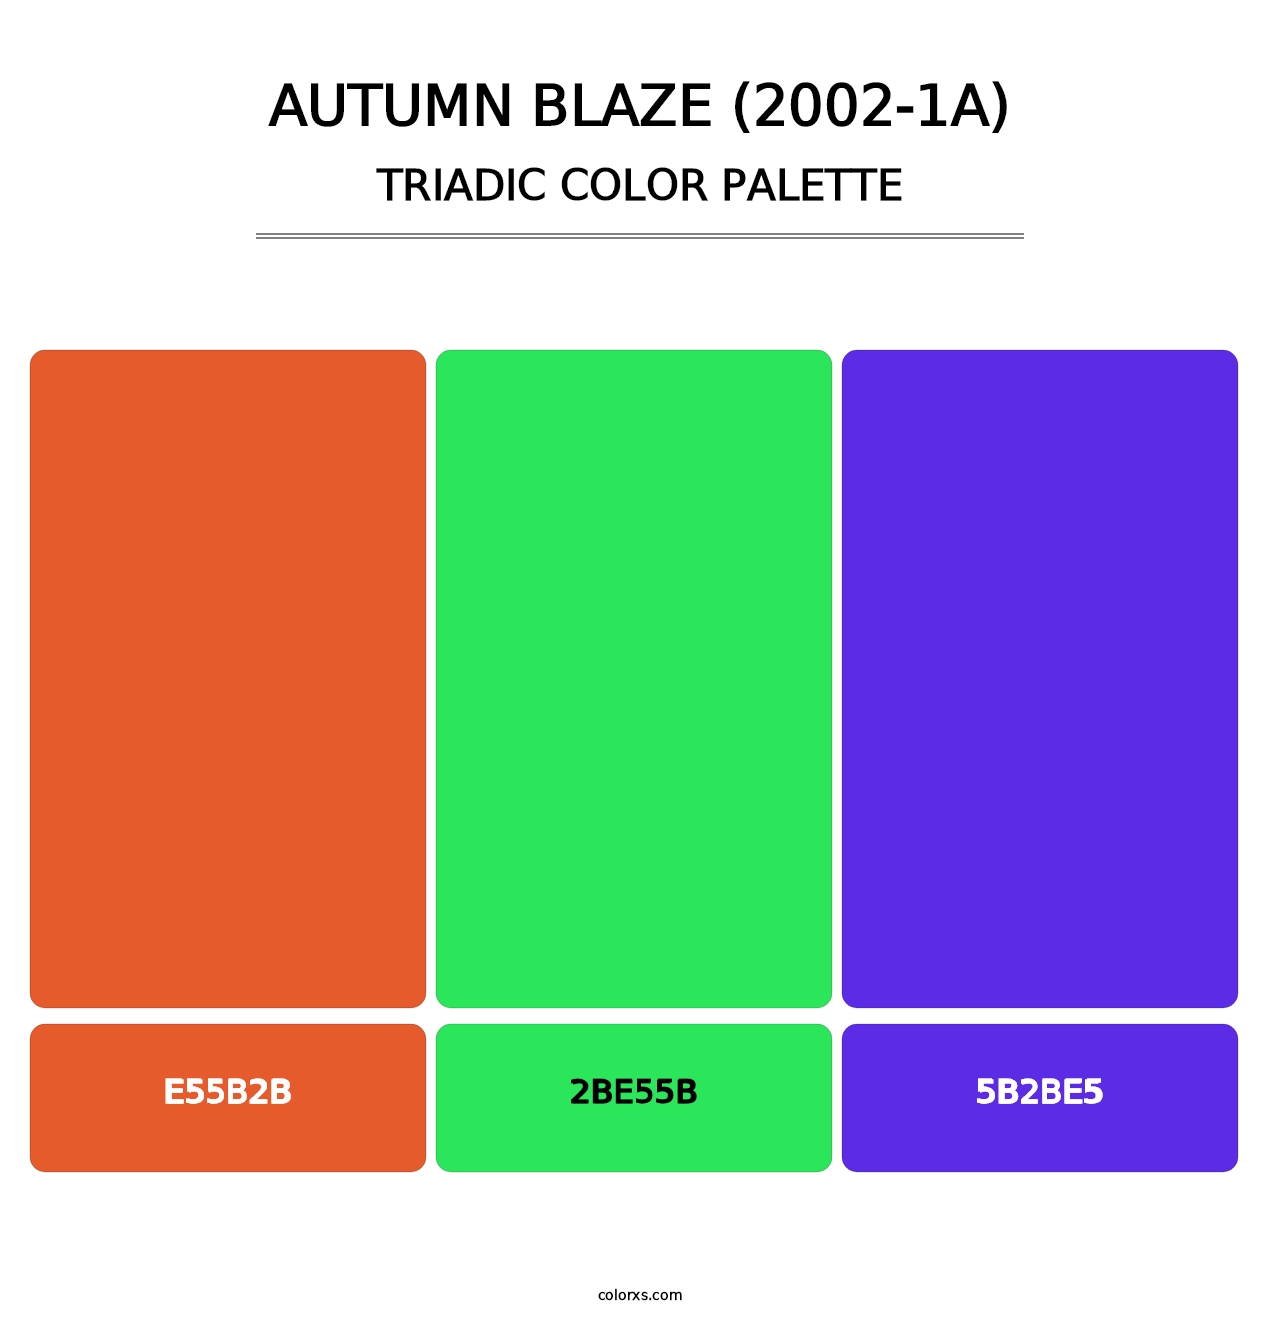 Autumn Blaze (2002-1A) - Triadic Color Palette